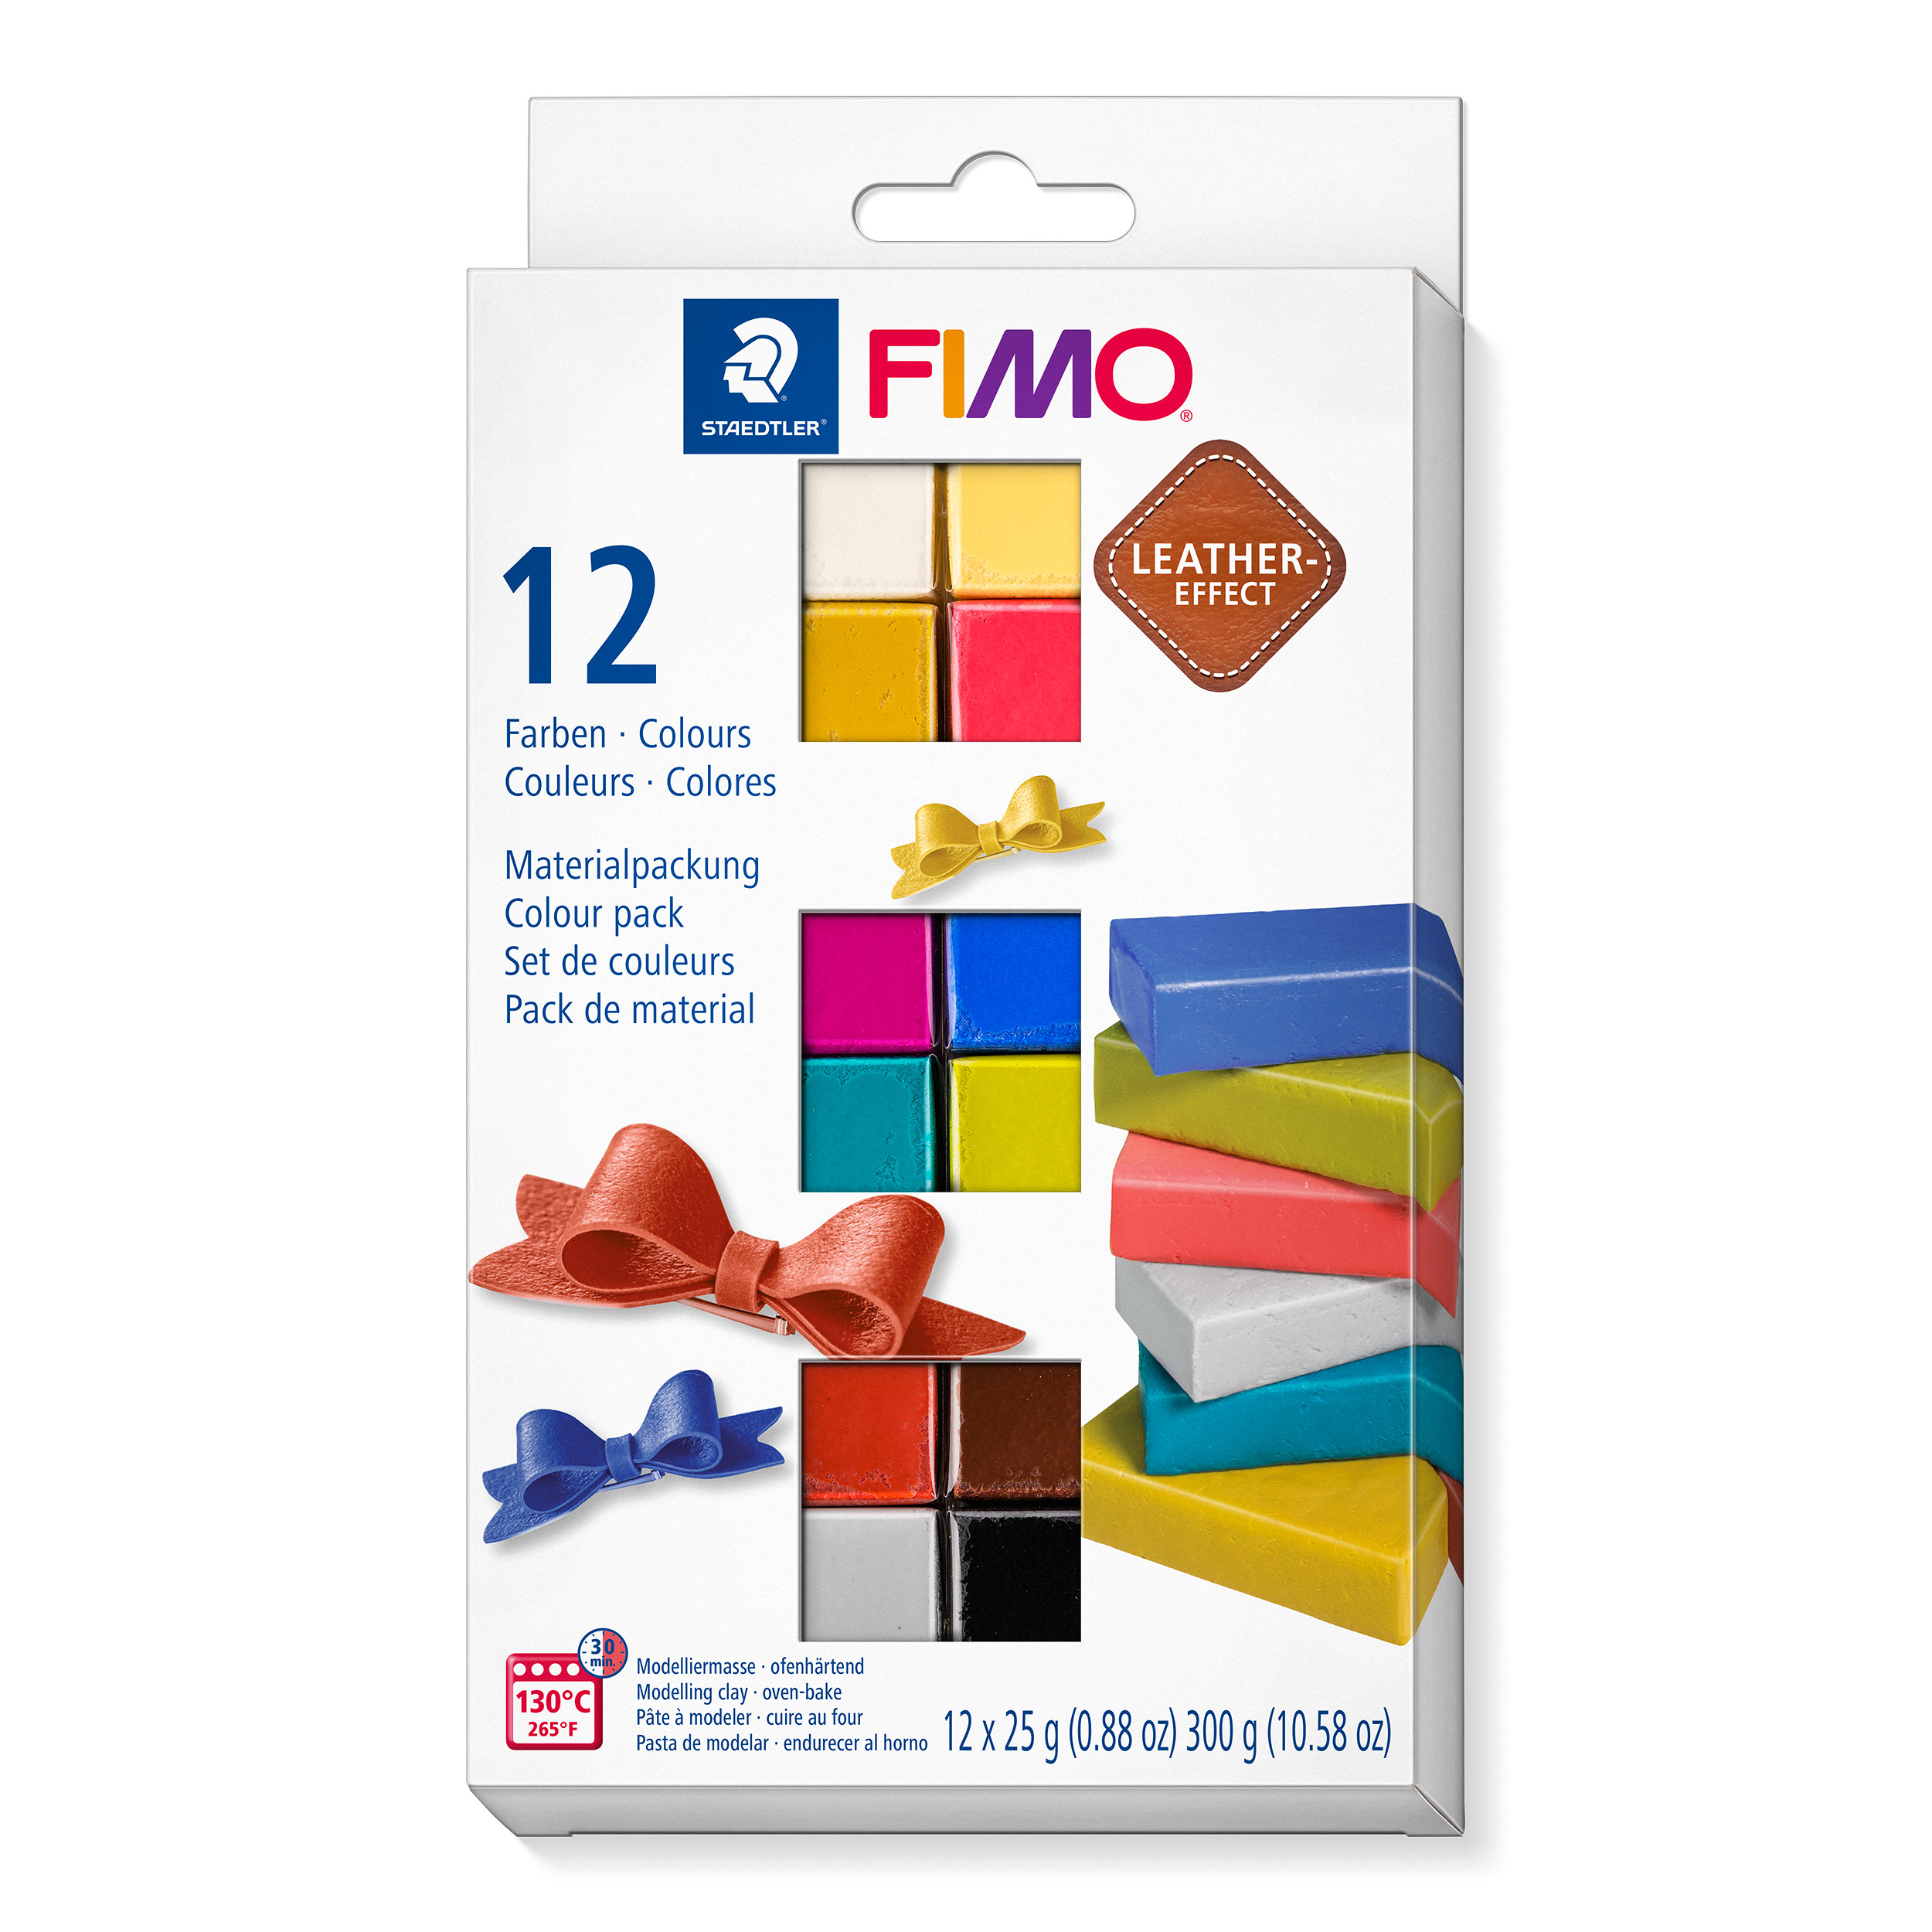 STAEDTLER FIMO 8013 C - Kreative Knetmasse für Erwachsene - 12 Stück in gemischten Farben - Backfähig bis 130 °C - 30 Minuten Aushärtezeit